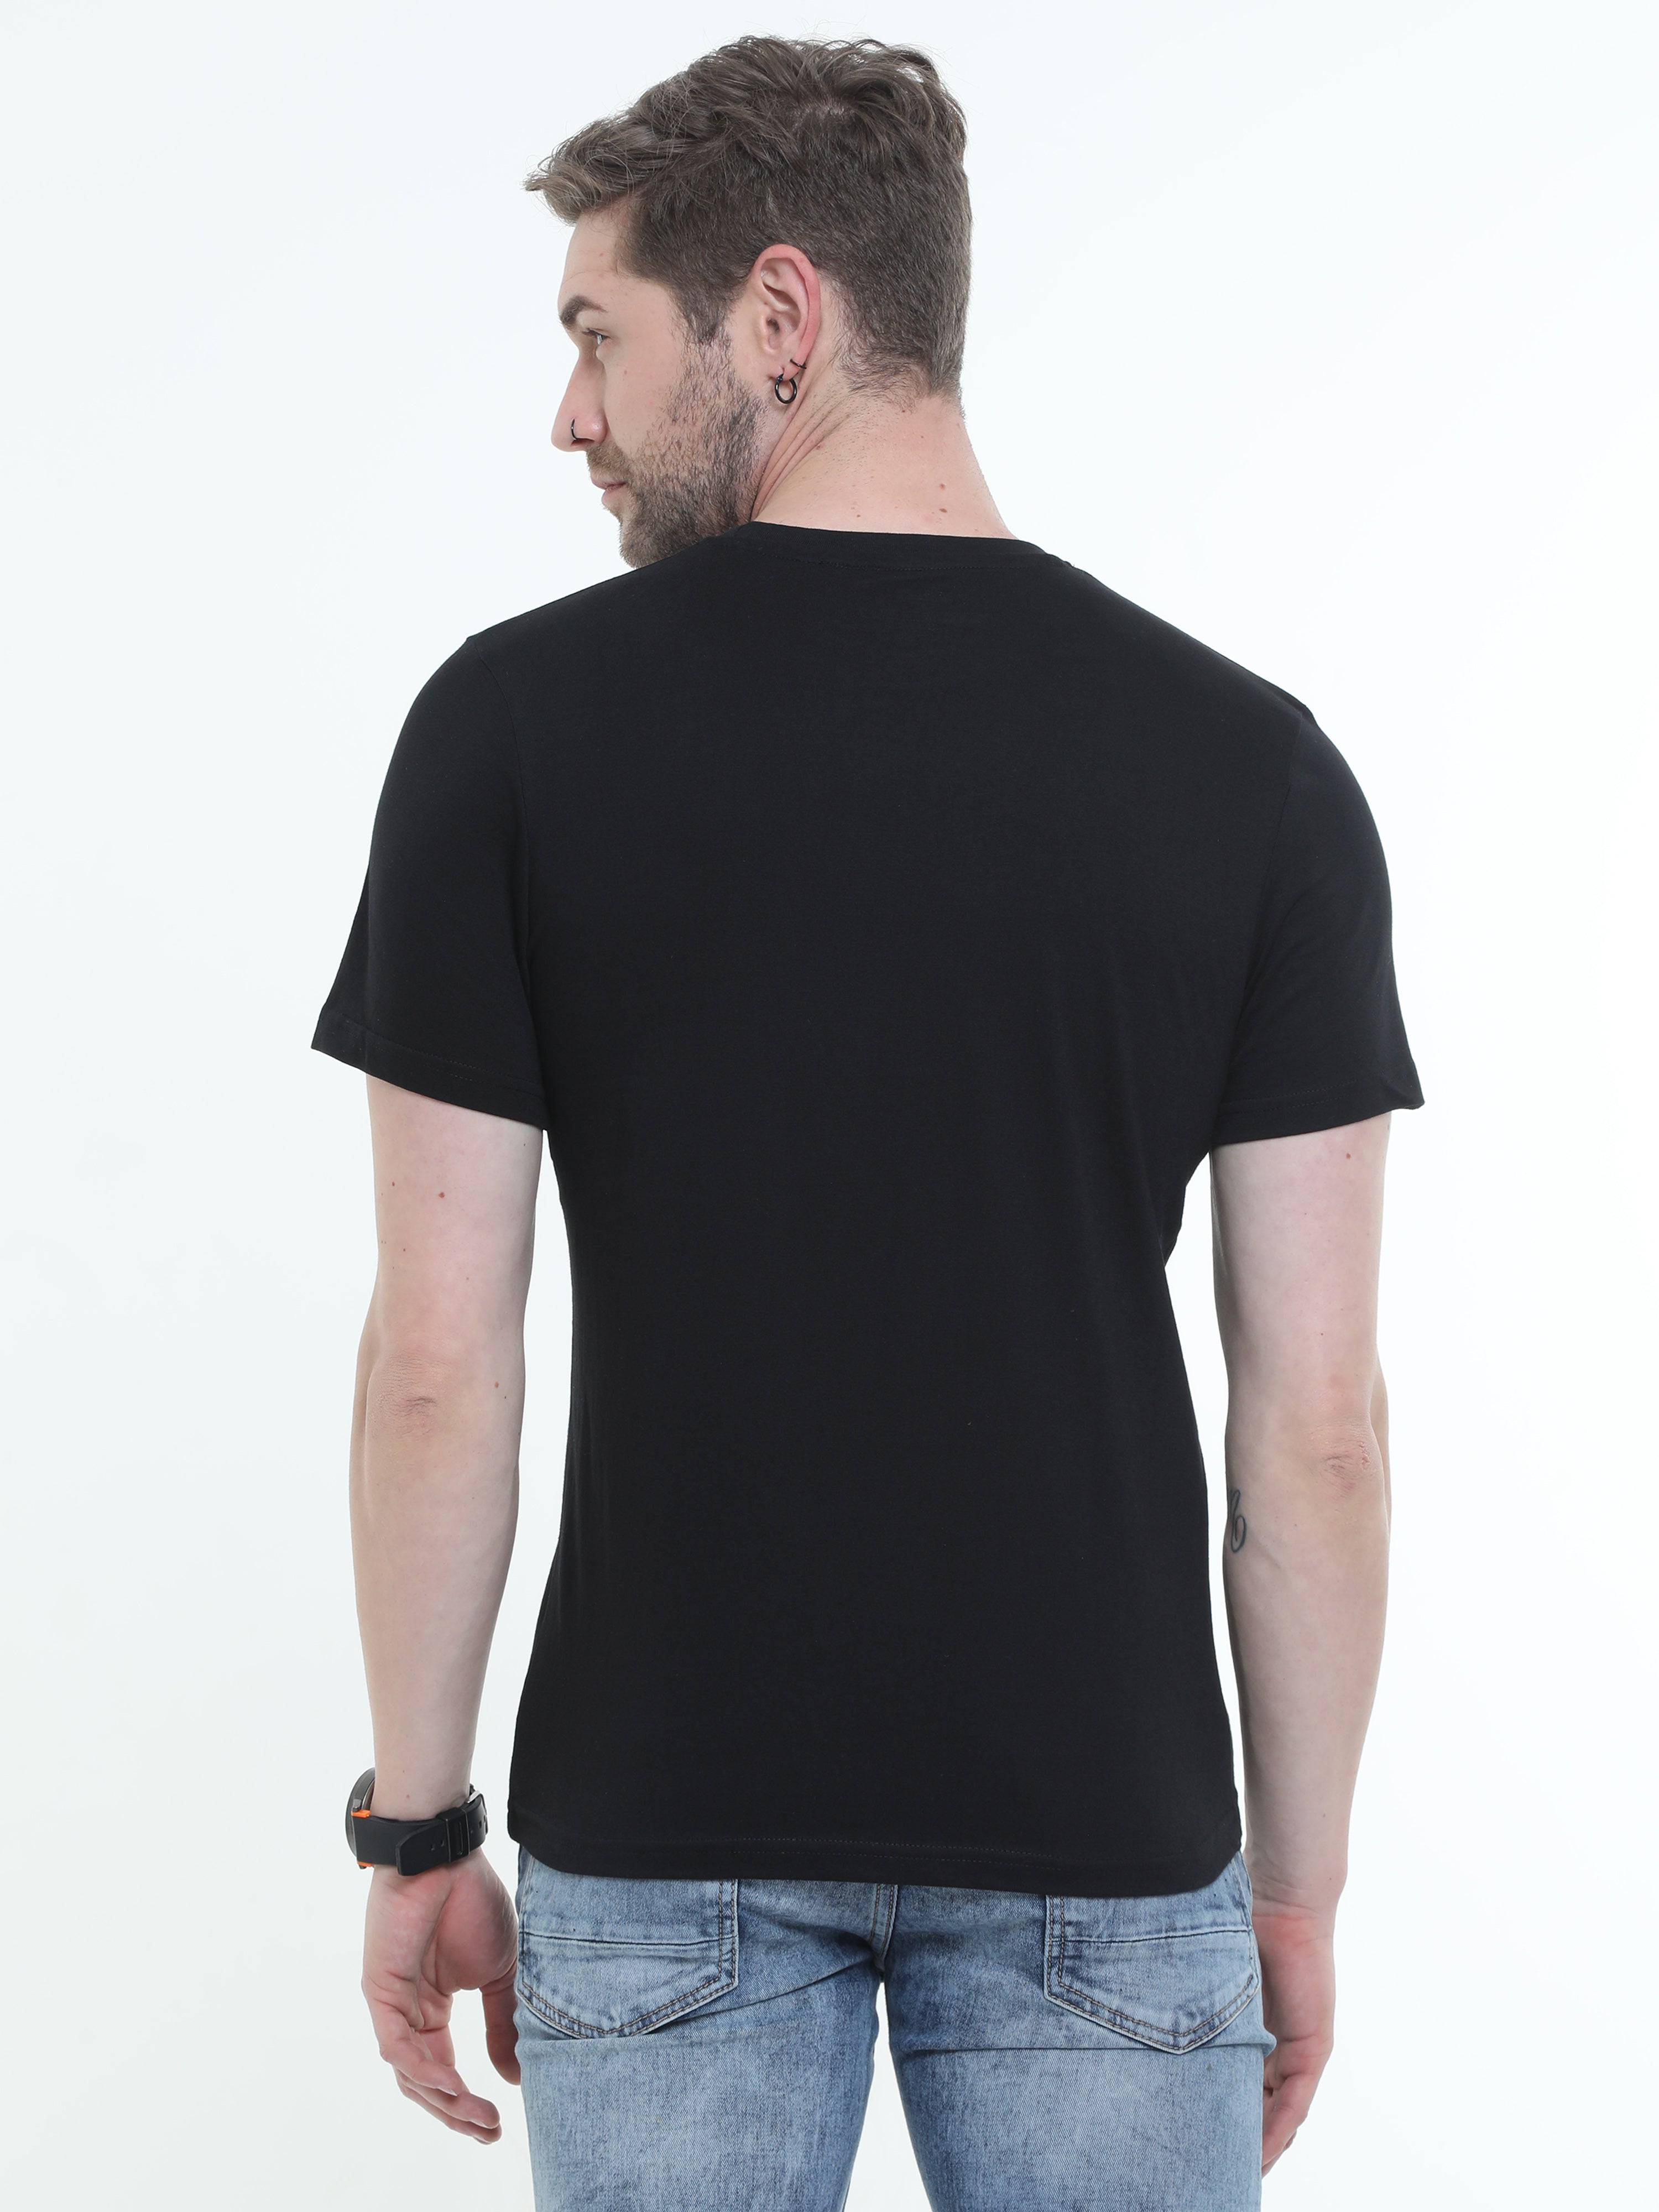 Typo Graphic Round neck Printed T-shirt